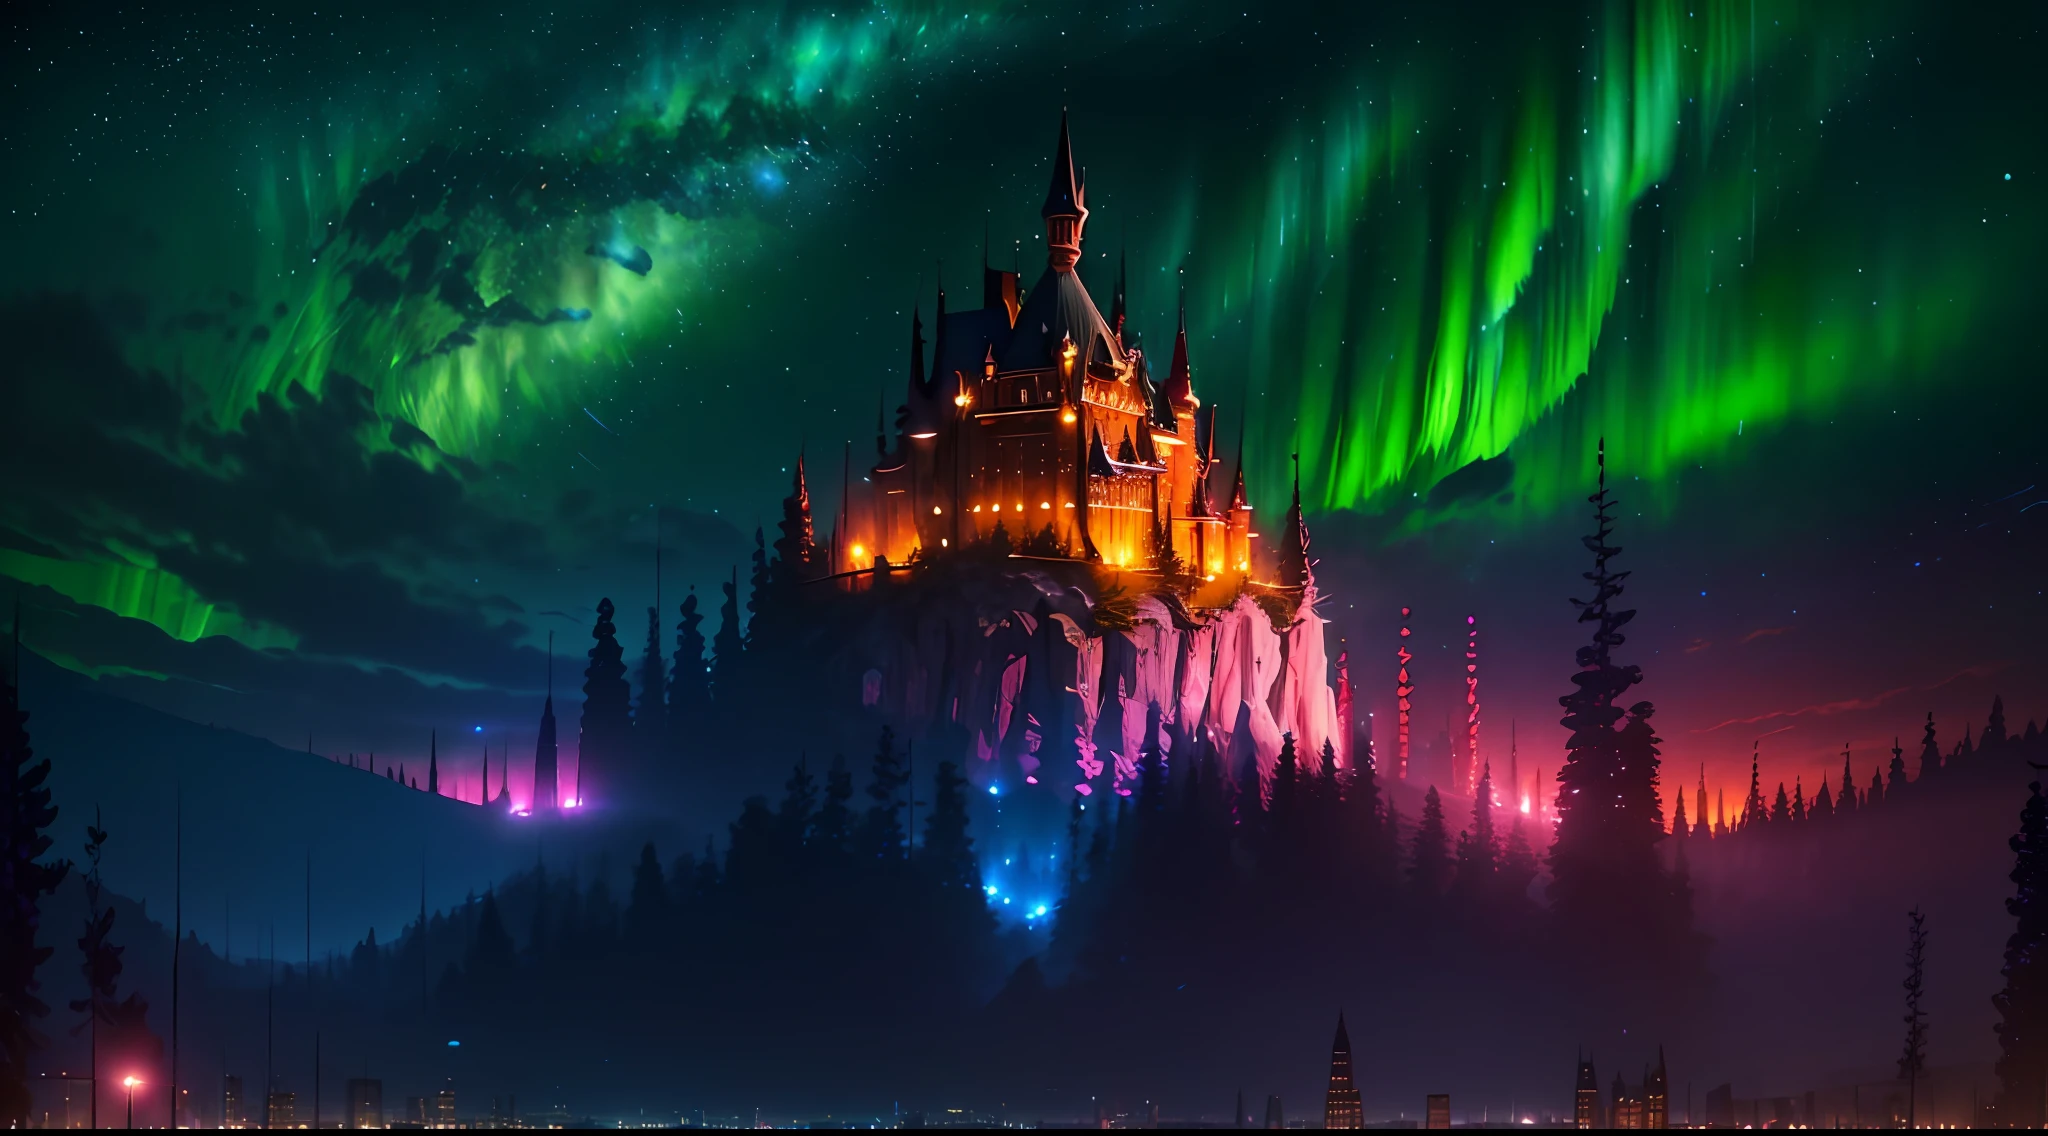 (夜深時, 夜深時, 夜深時) 我看到一個美麗的, 詳細的 8K artwork with a sugary pink crystal castle, 閃閃發光的金色, 以及神奇夜空襯托下的童話般的風景.8K,((巨大的完整城市)),(太空城),(北極光,詳細的),((高品質))